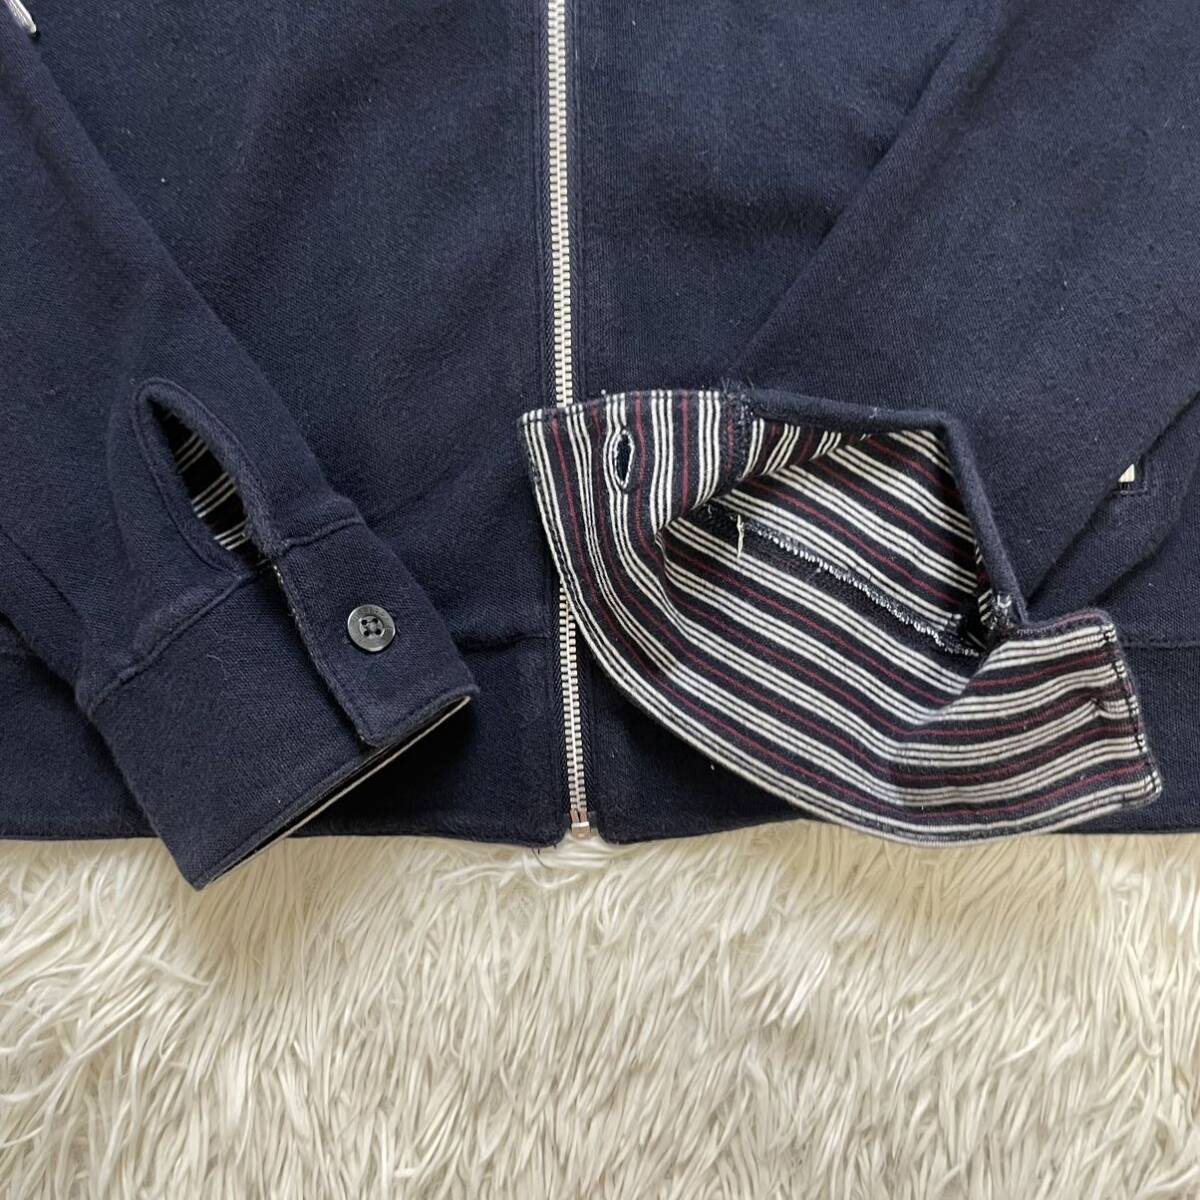  хорошая вещь 3(L) Burberry Black Label шланг вышивка двухсторонний окантовка эластичность спортивная куртка # блузон BURBERRY BLACK LABEL жакет 